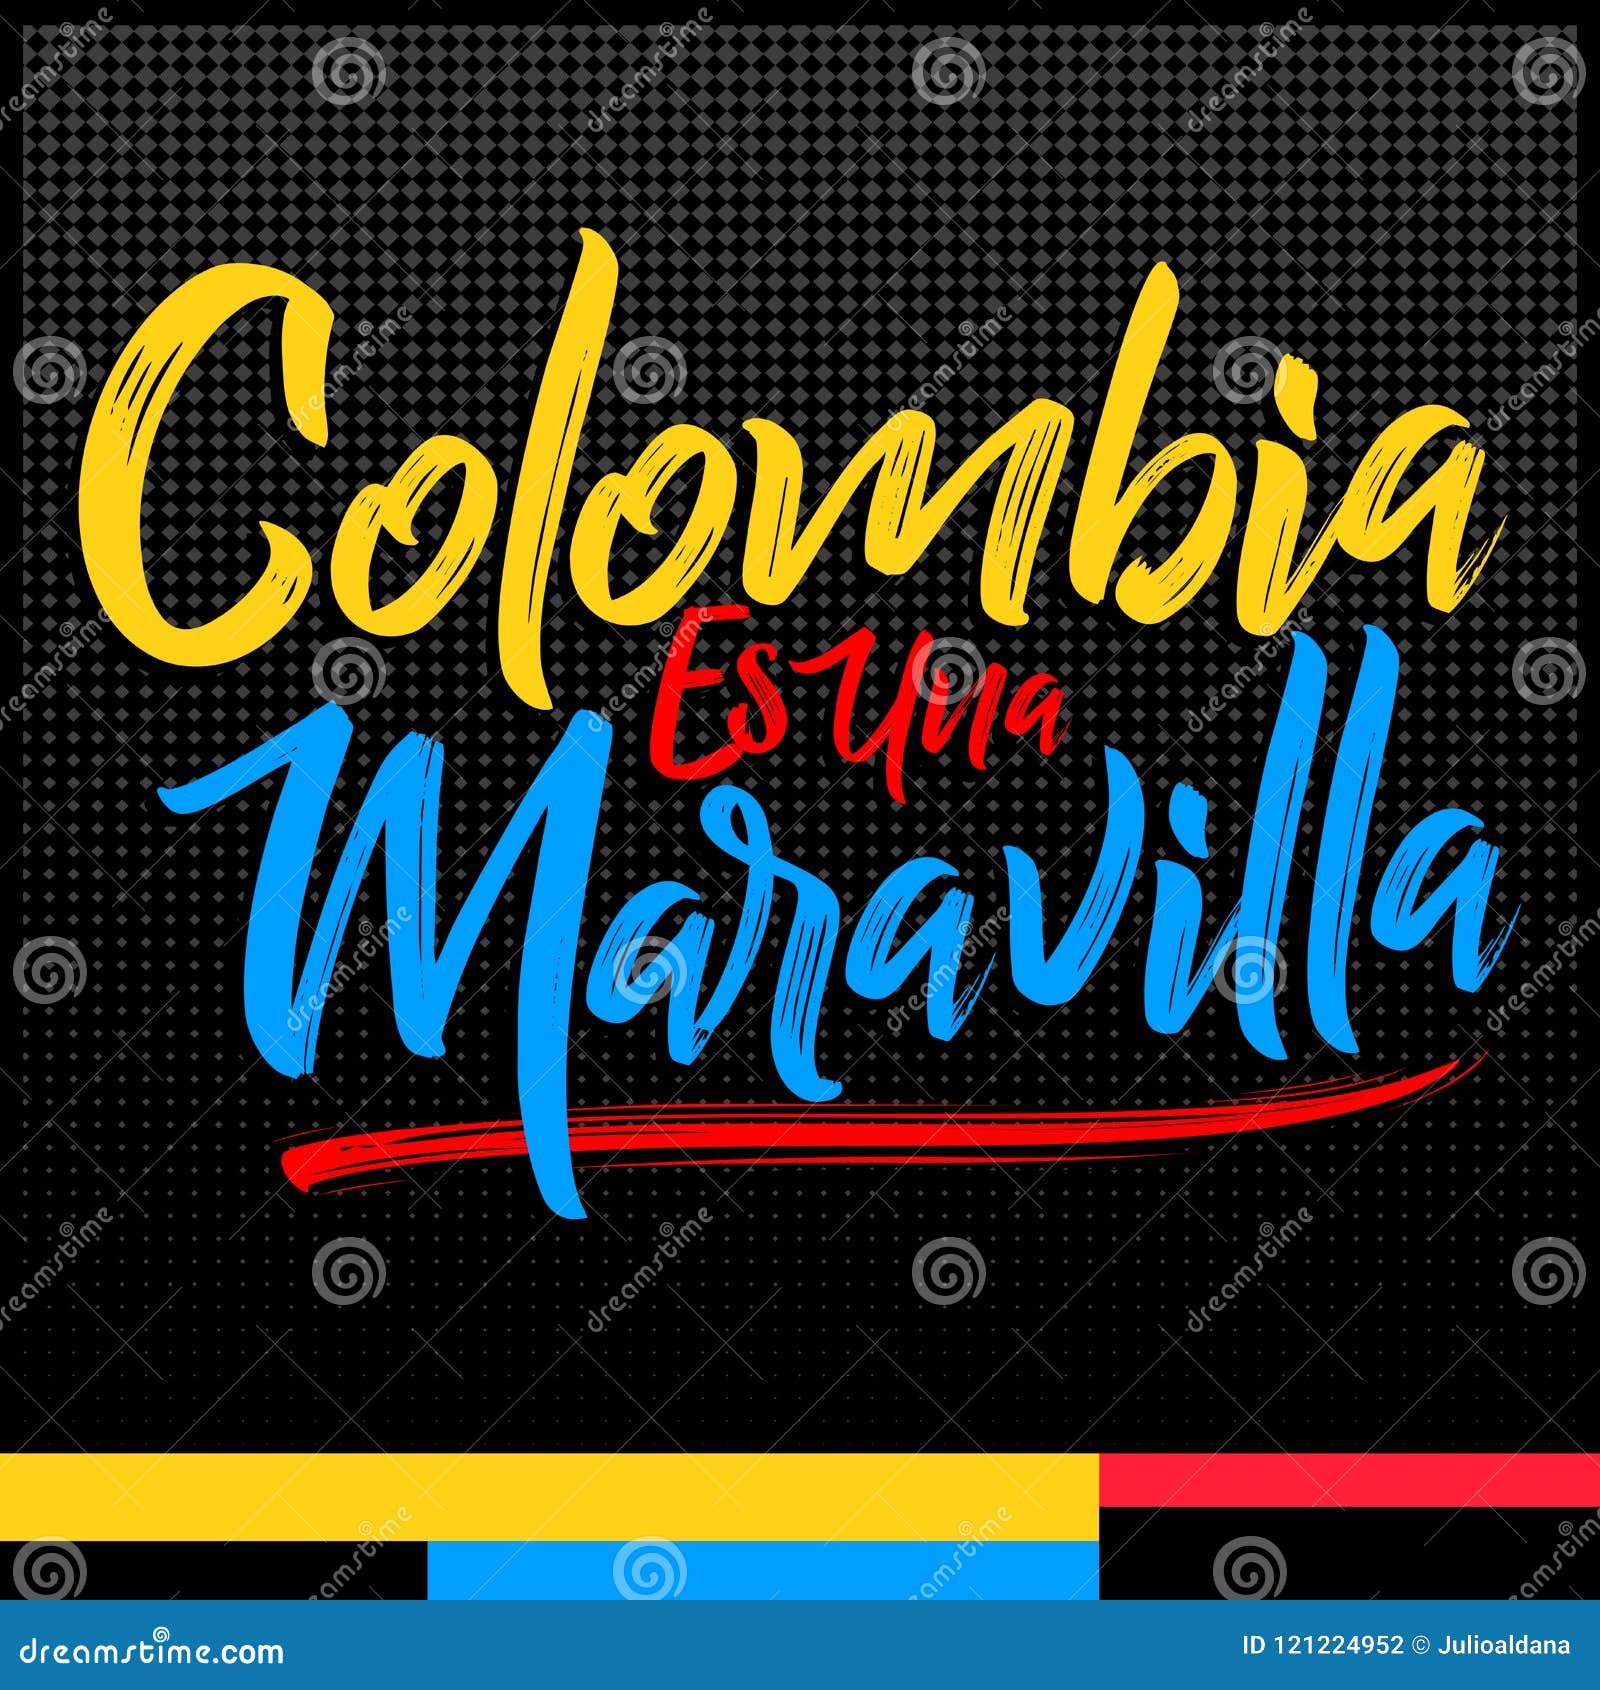 colombia es una maravilla, colombia is a wonder spanish text